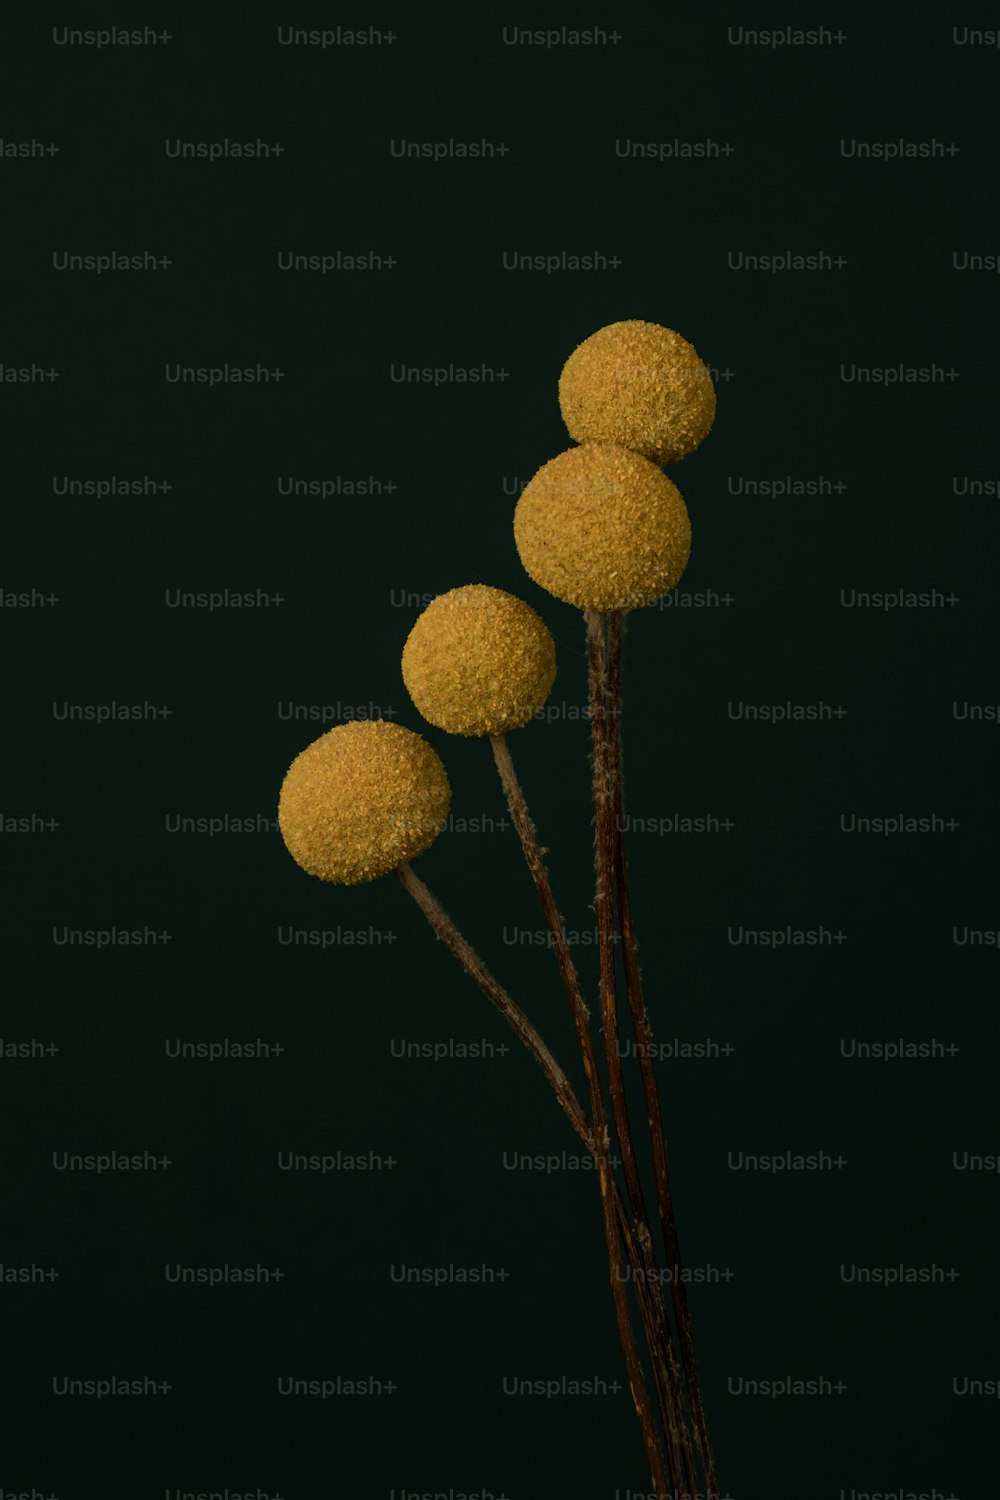 Eine Gruppe von drei gelben Kugeln, die auf einer Pflanze sitzen